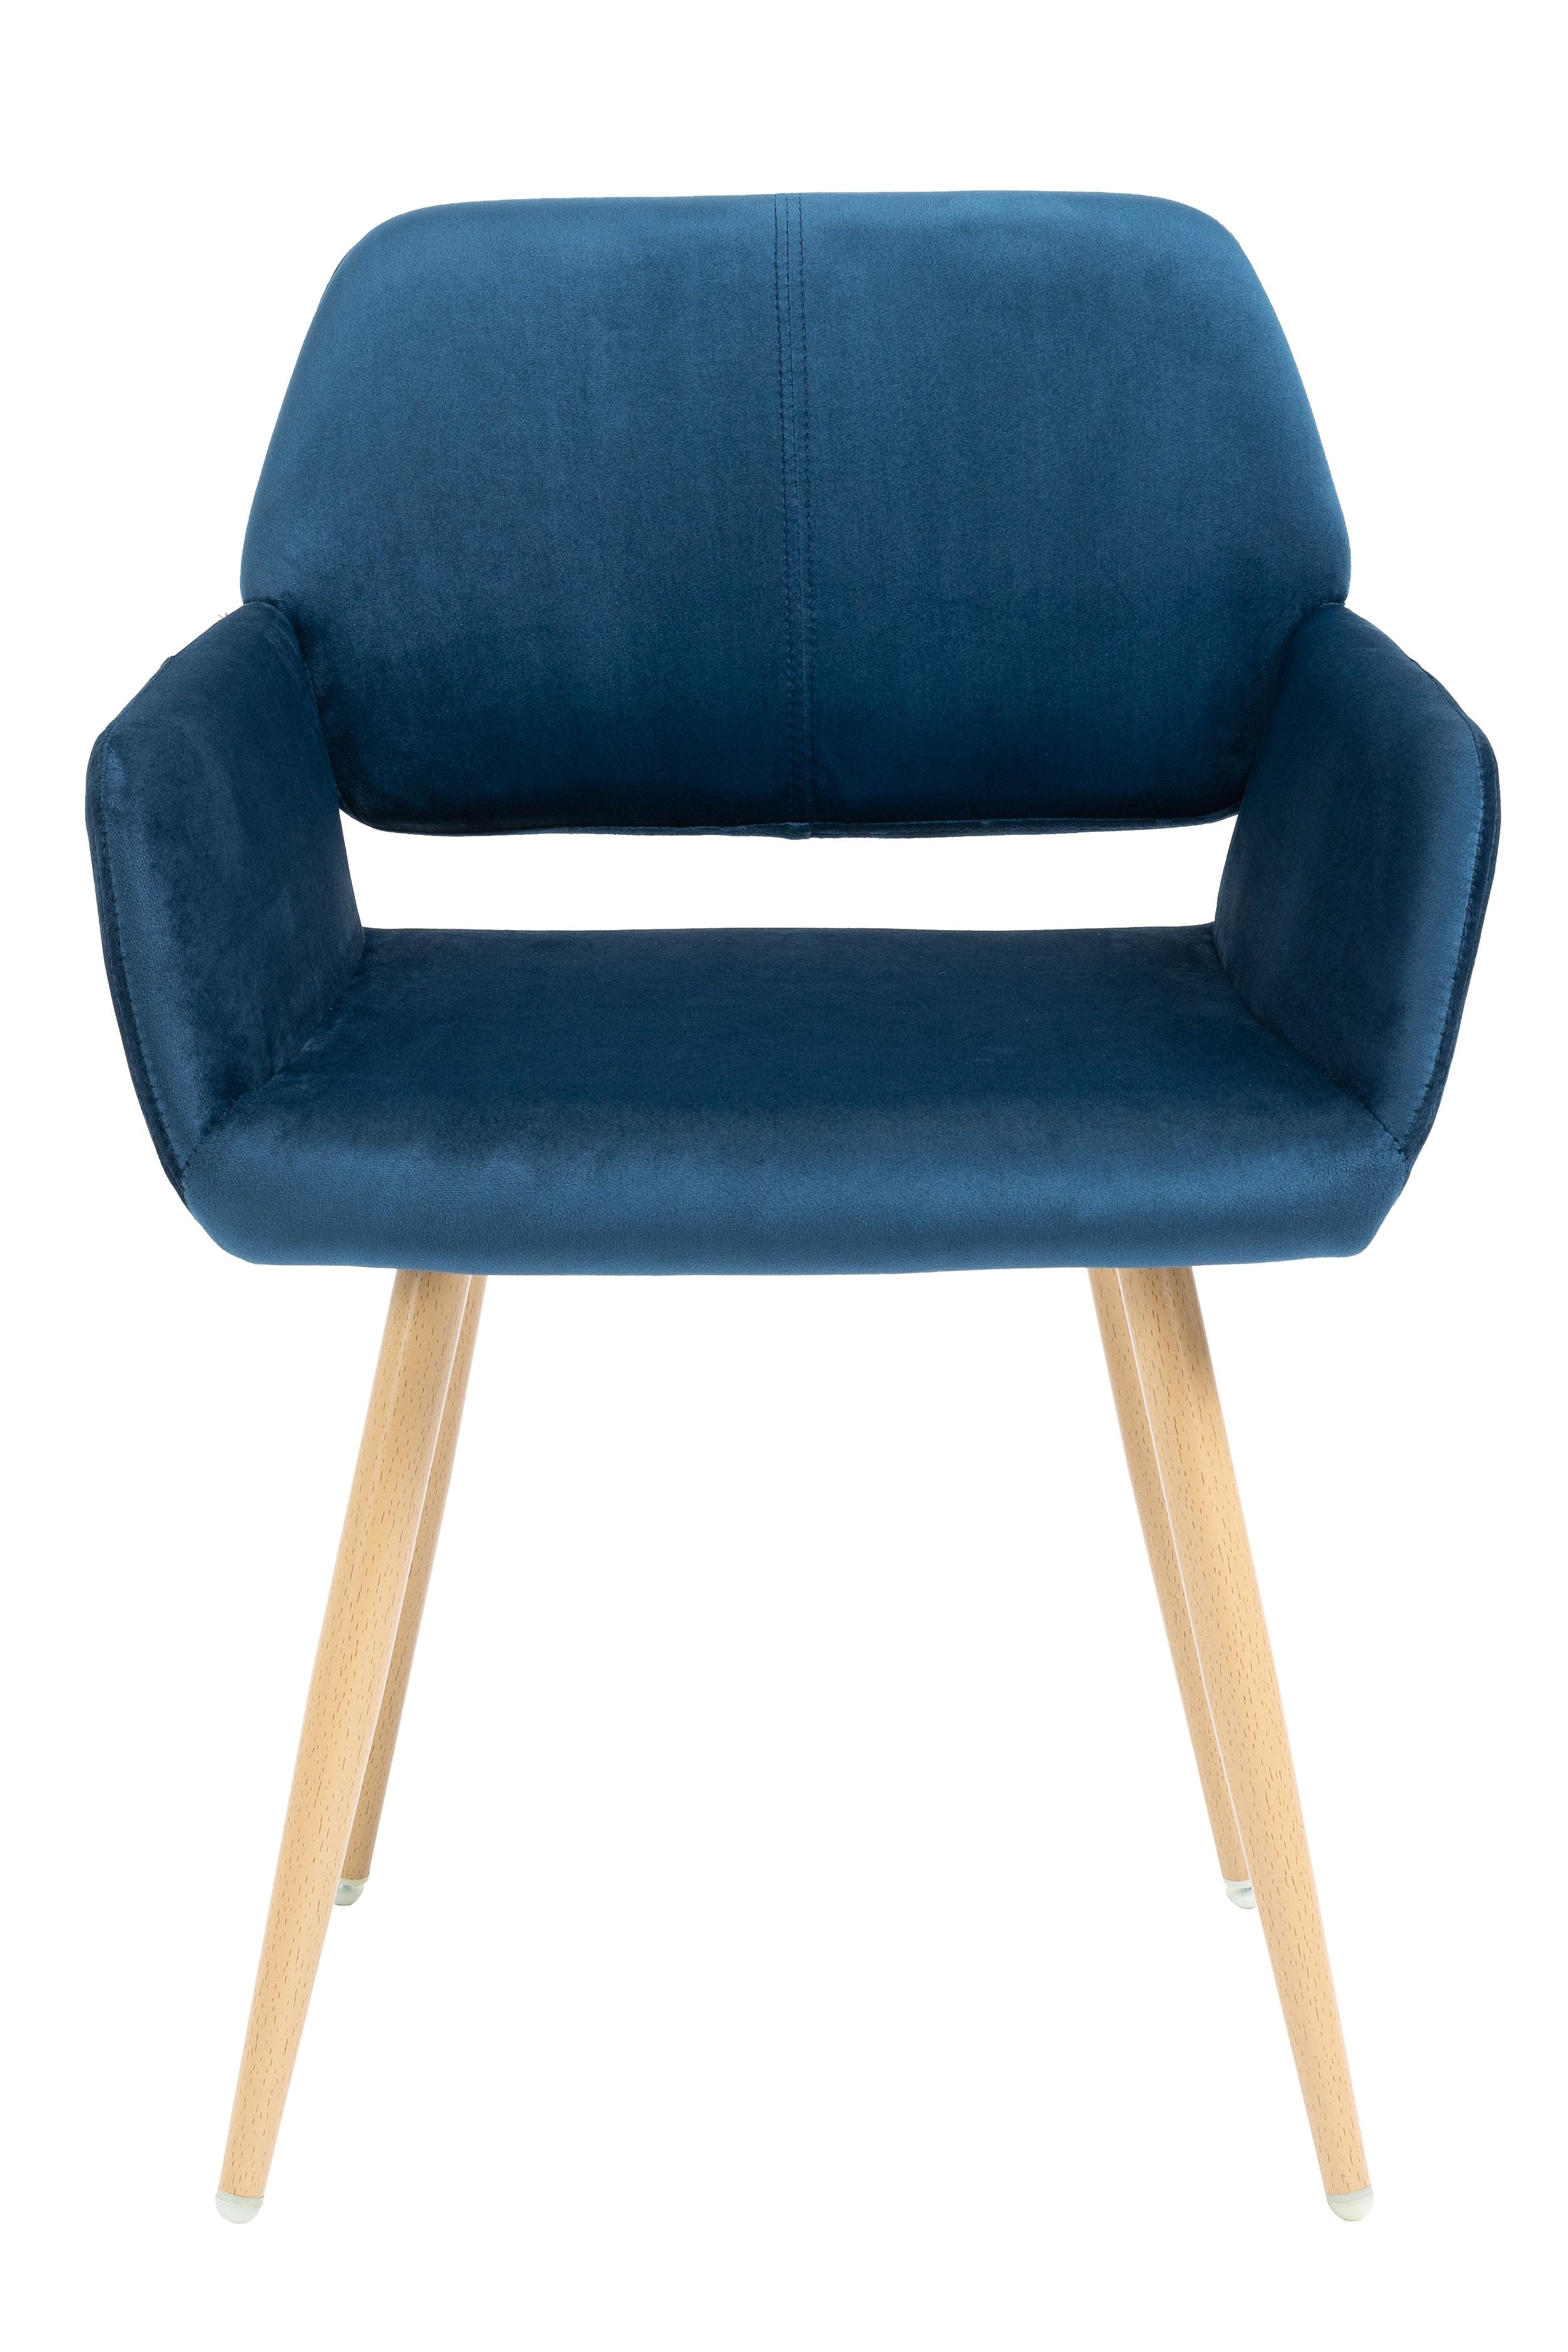 Velet Upholstered Side Dining Chair with Metal Leg,KD backrest-Boyel Living